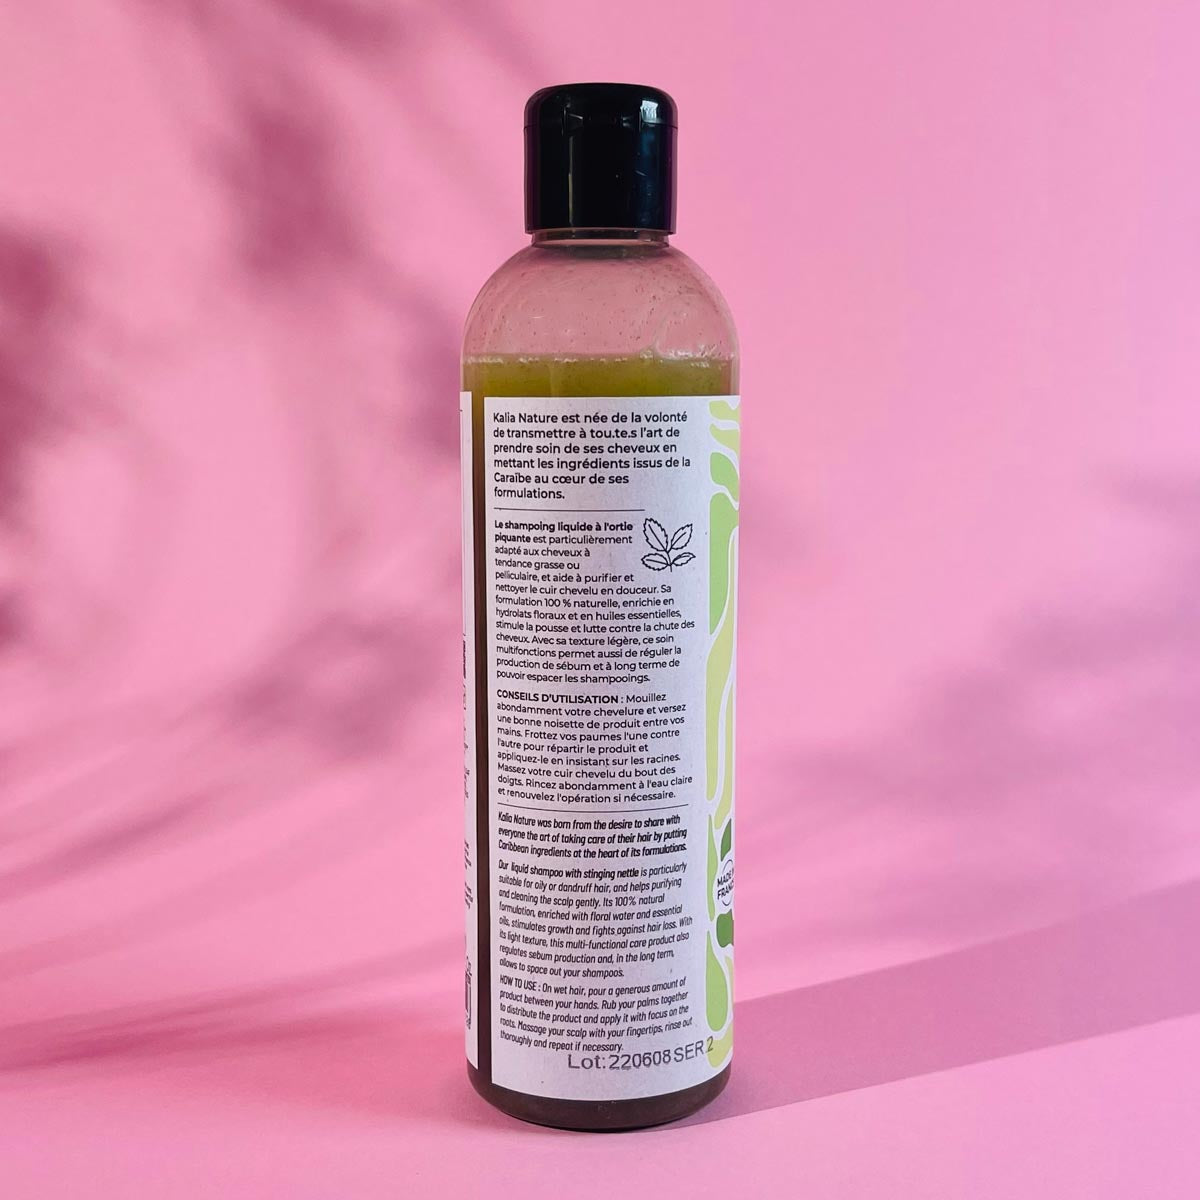 Shampoo à l'Ortie Piquante (Brennnessel) - 250ml